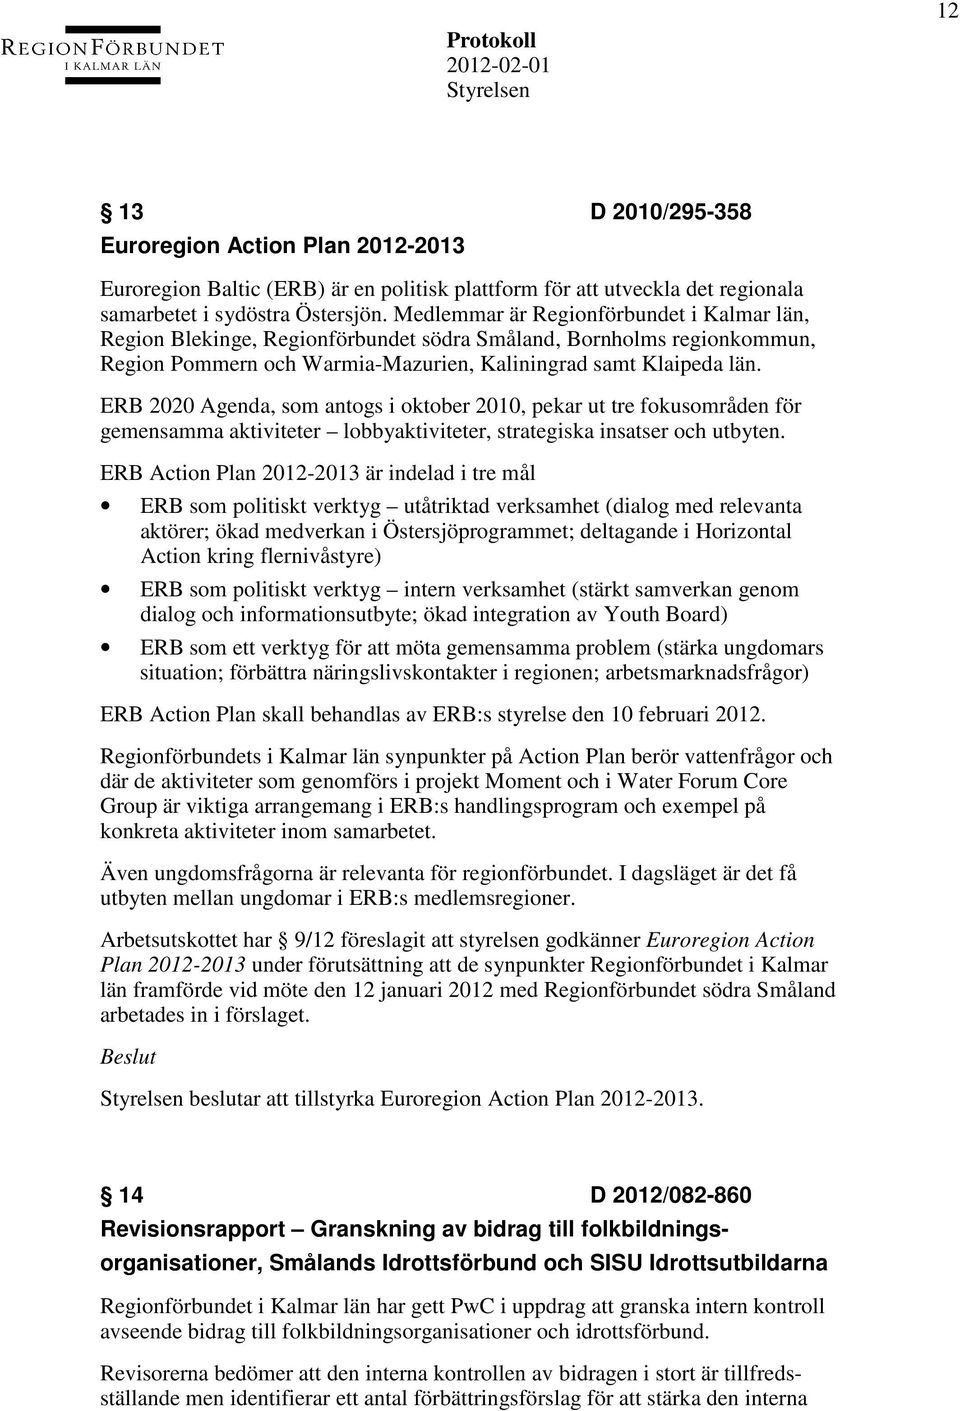 ERB 2020 Agenda, som antogs i oktober 2010, pekar ut tre fokusområden för gemensamma aktiviteter lobbyaktiviteter, strategiska insatser och utbyten.